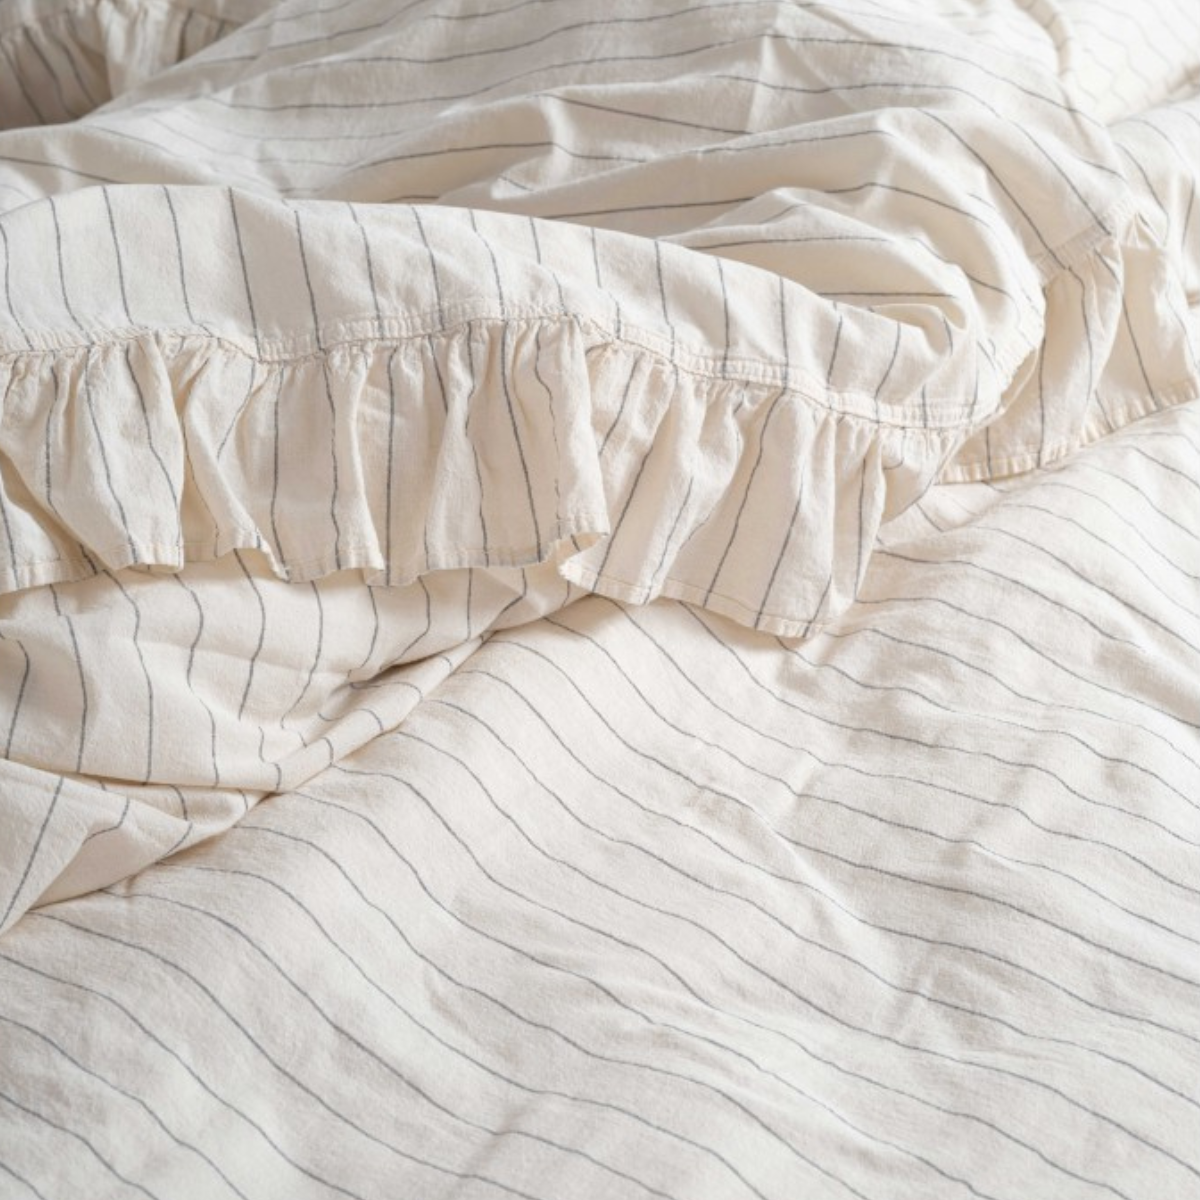 MATT Design | Frills Stripe - off white